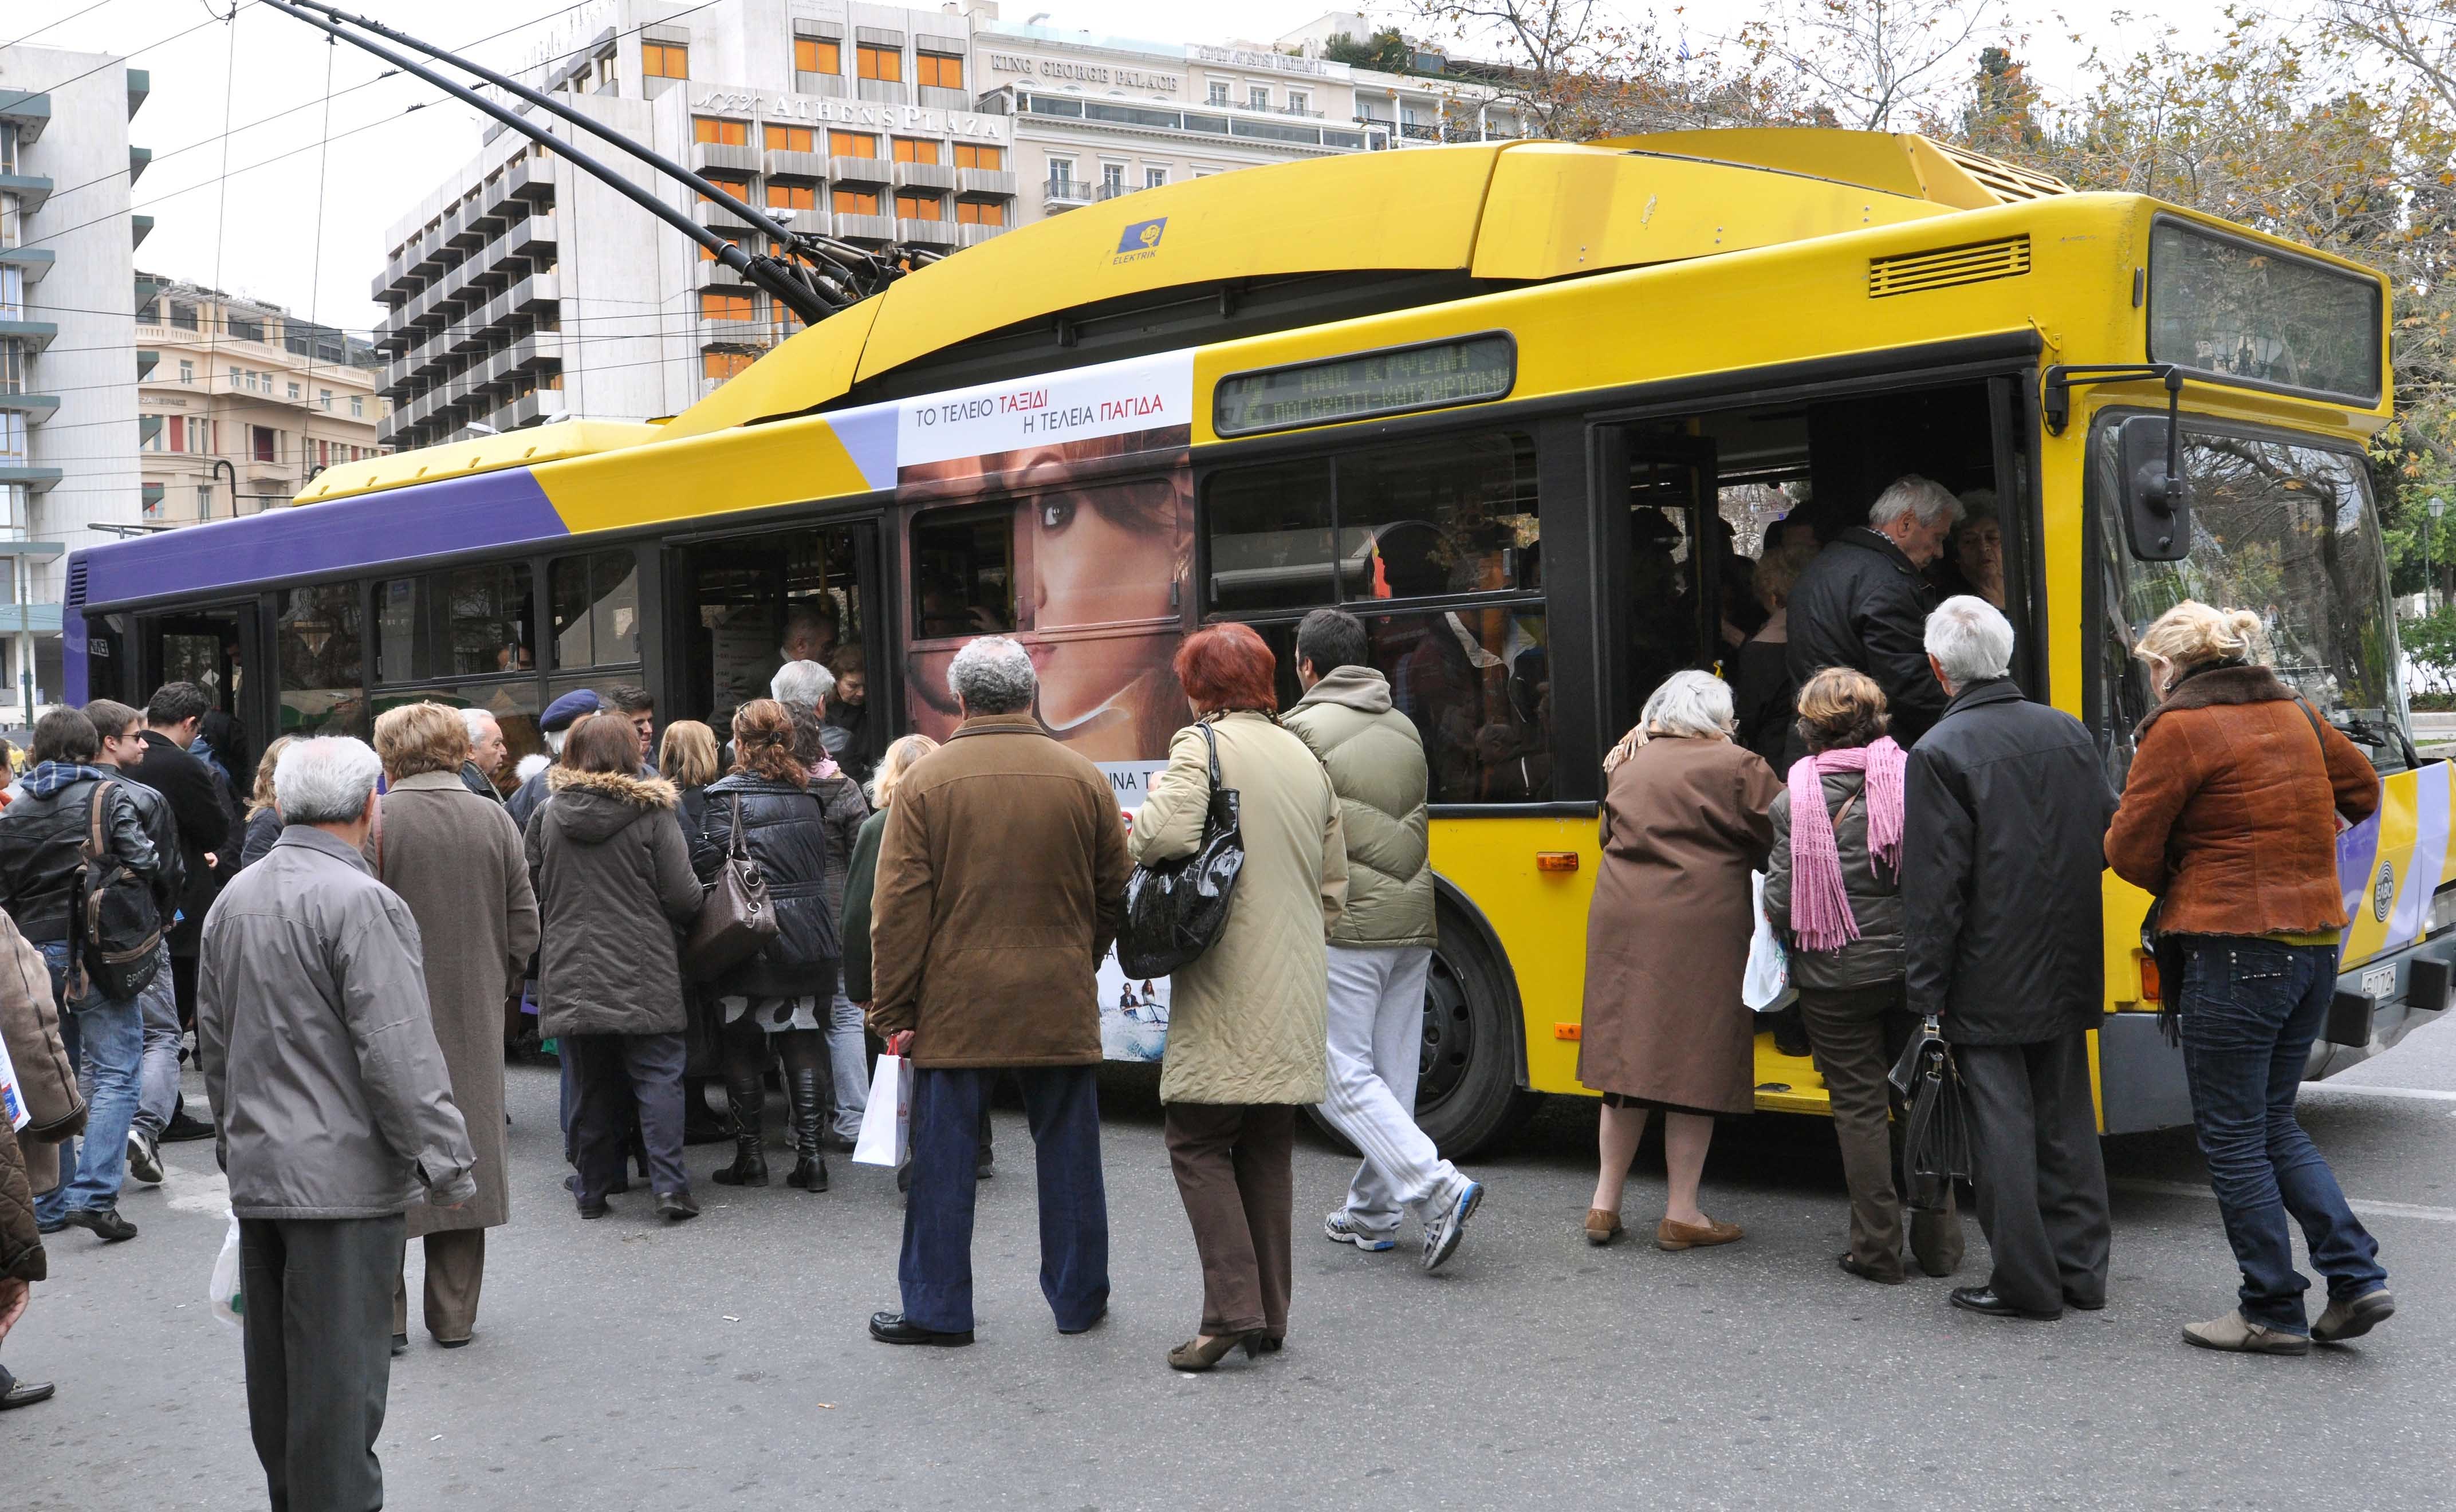 “Χειρόφρενο” όλο το Σαββατοκύριακο τραβούν λεωφορεία, τρόλεϊ, ΟΣΕ και Προαστιακός